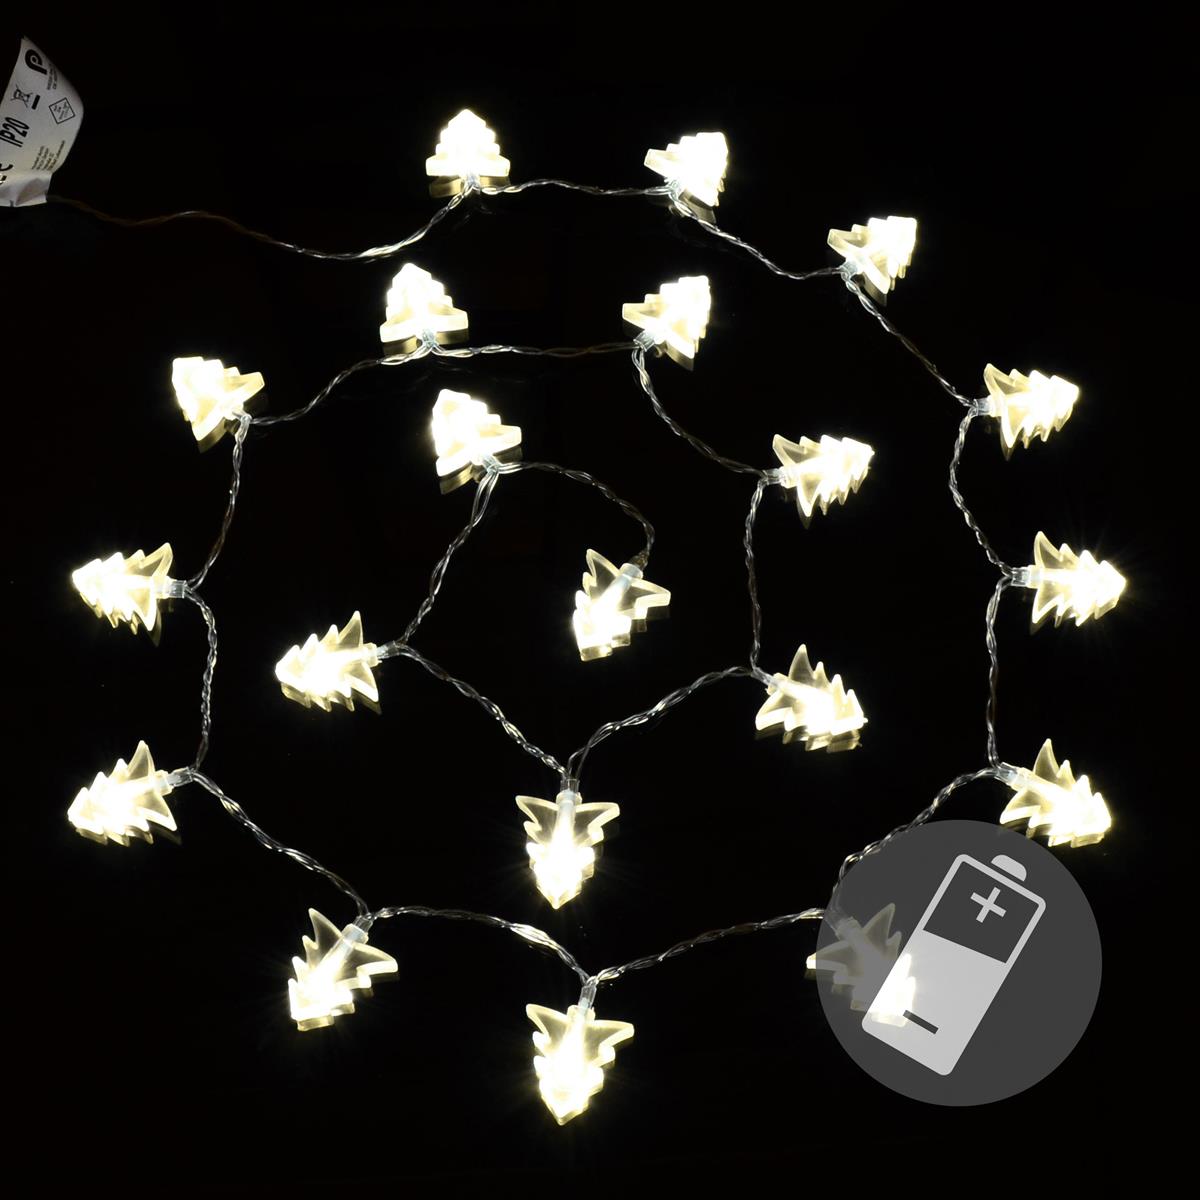 20er LED Lichterkette warmweiß Baum Weihnachtsbaumlichterkette Batterie Deko